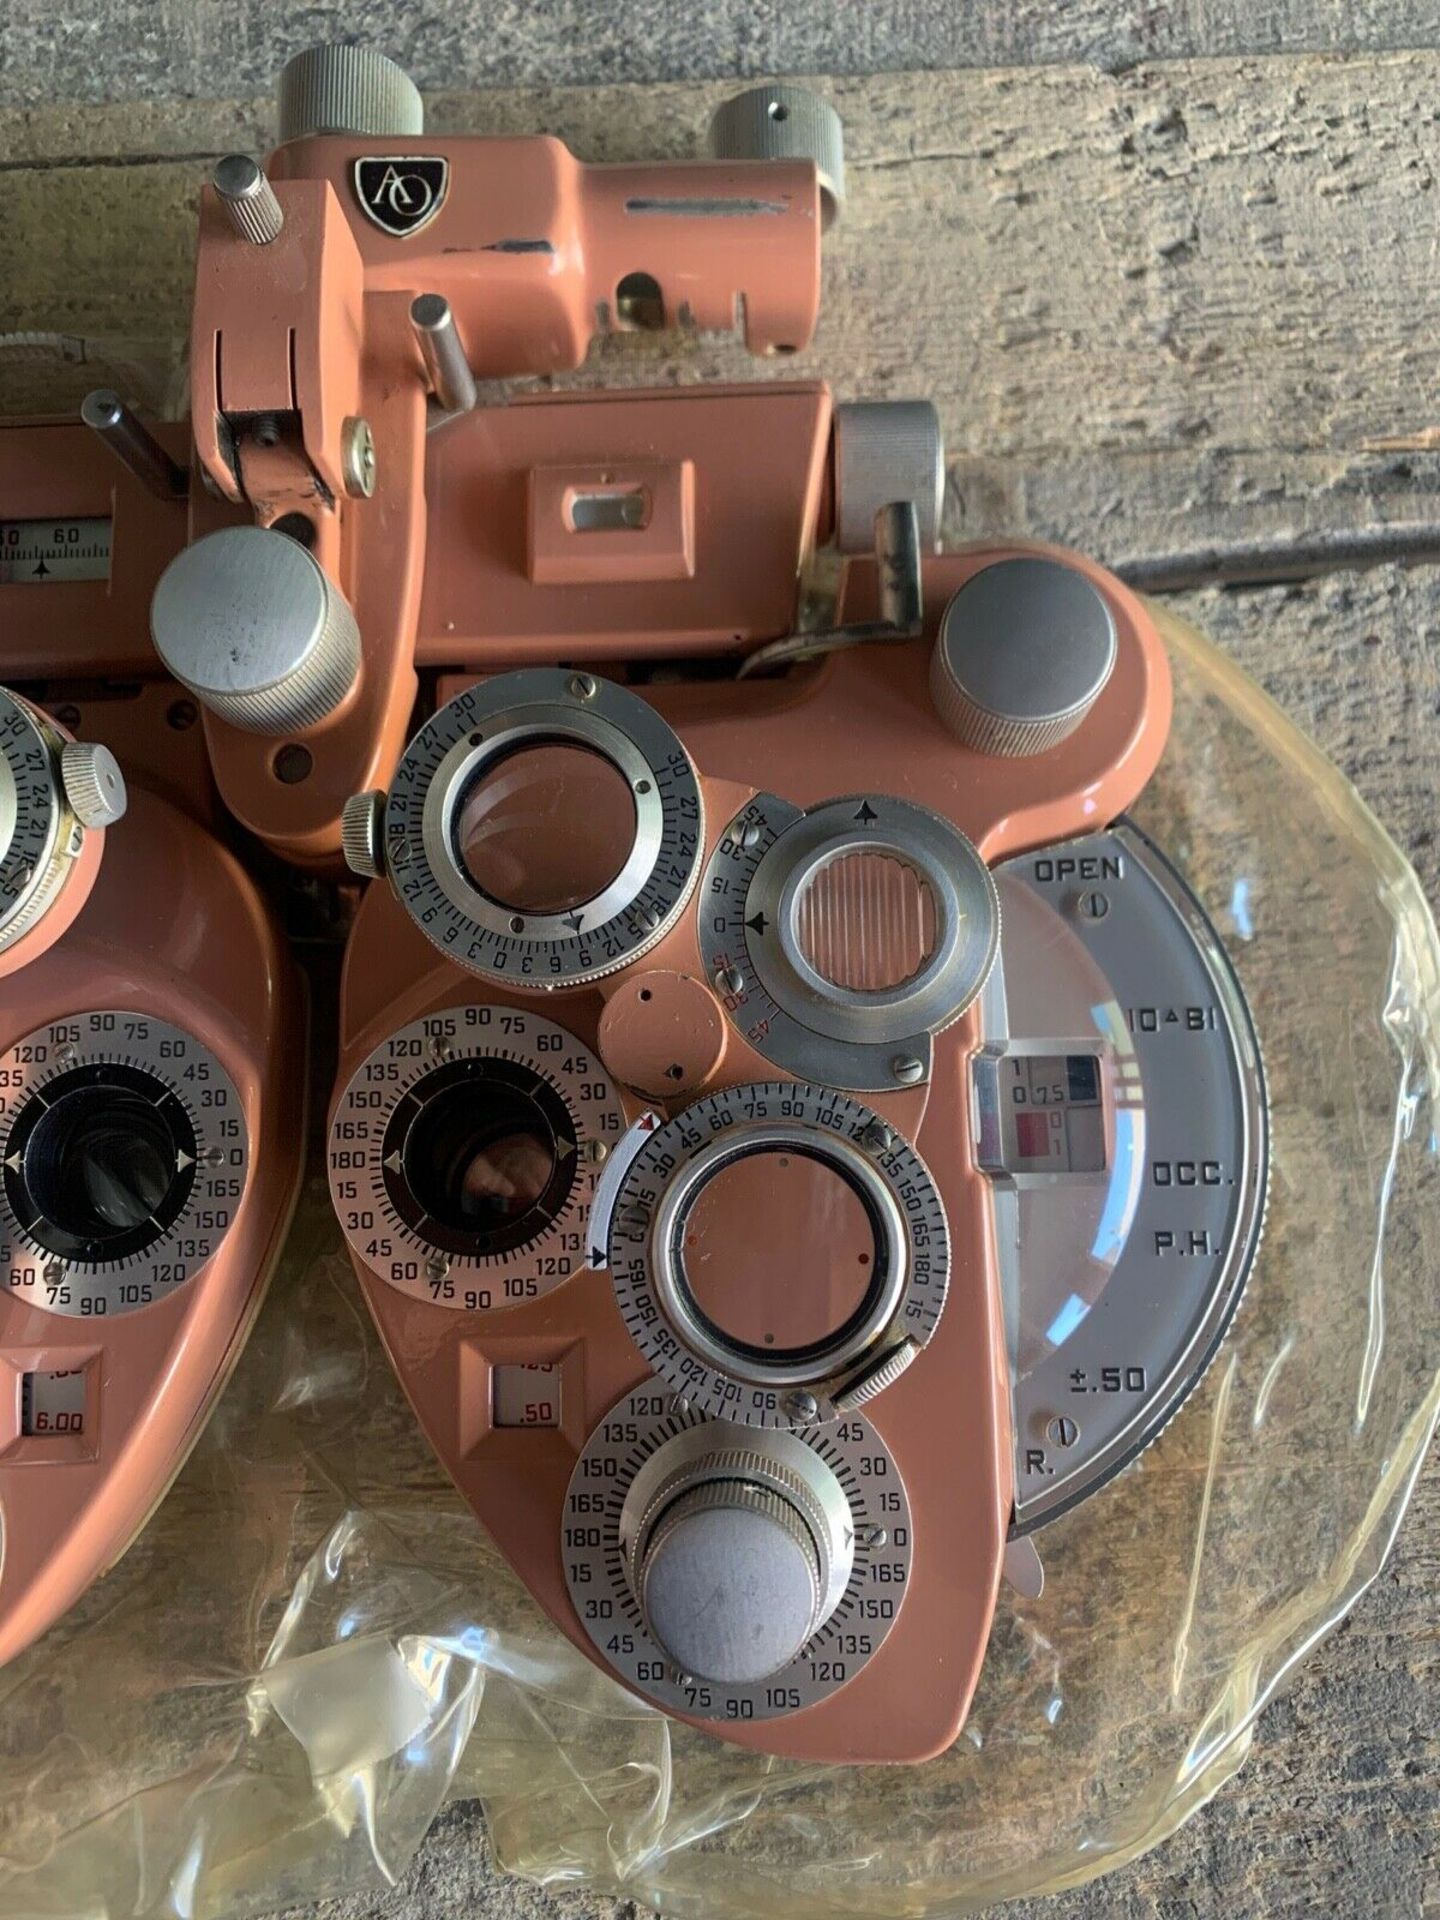 American Optical Minus Cylinder Phoropter Model 11320 Optometry Phoroptor - Image 4 of 8